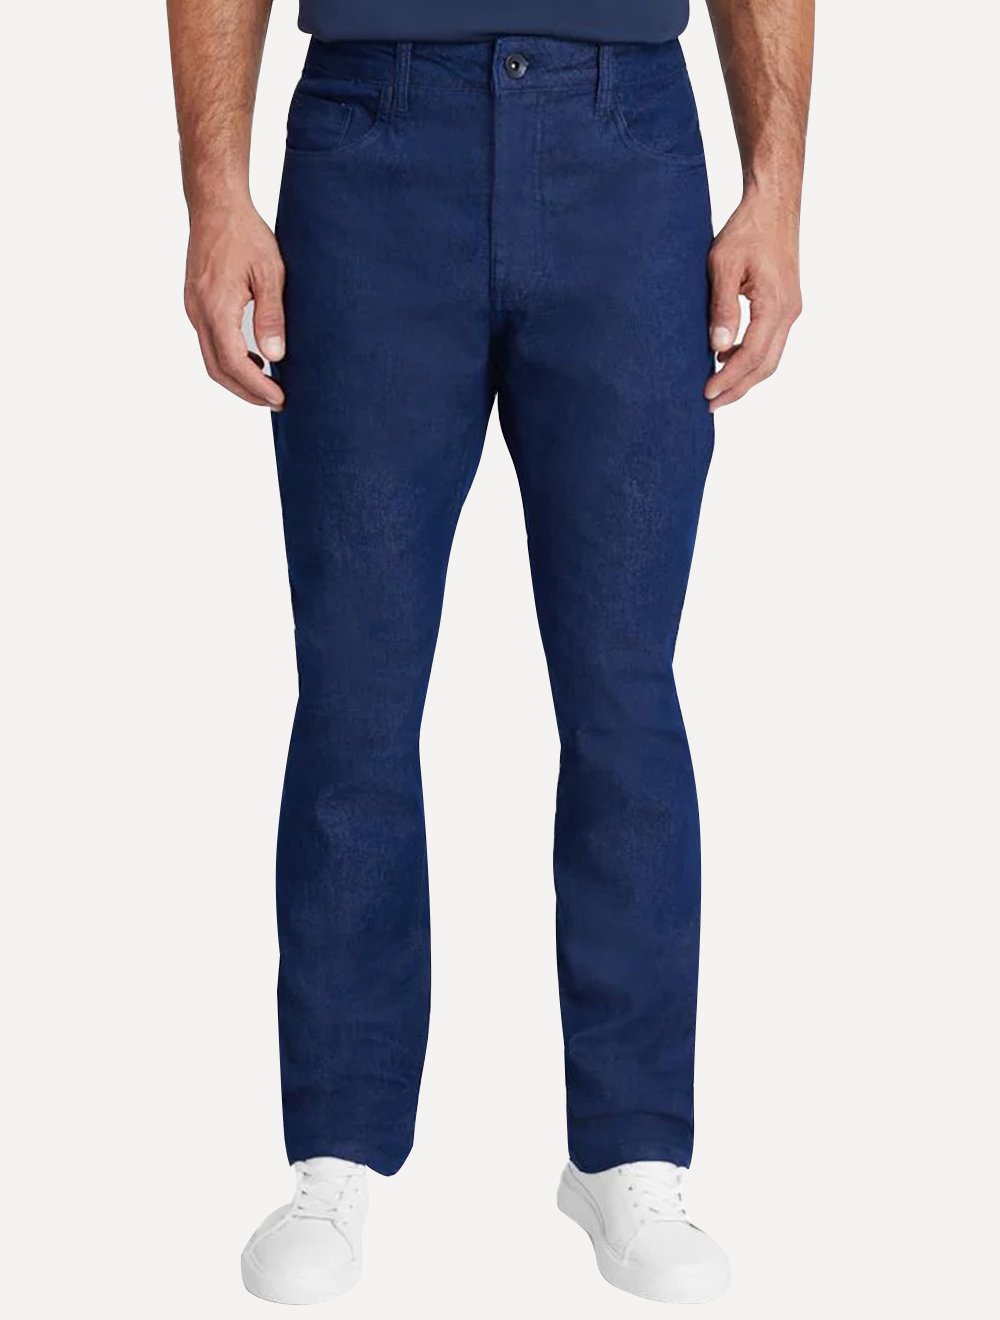 Calça Aramis Jeans Masculina Regular Índigo Blue Azul Escuro